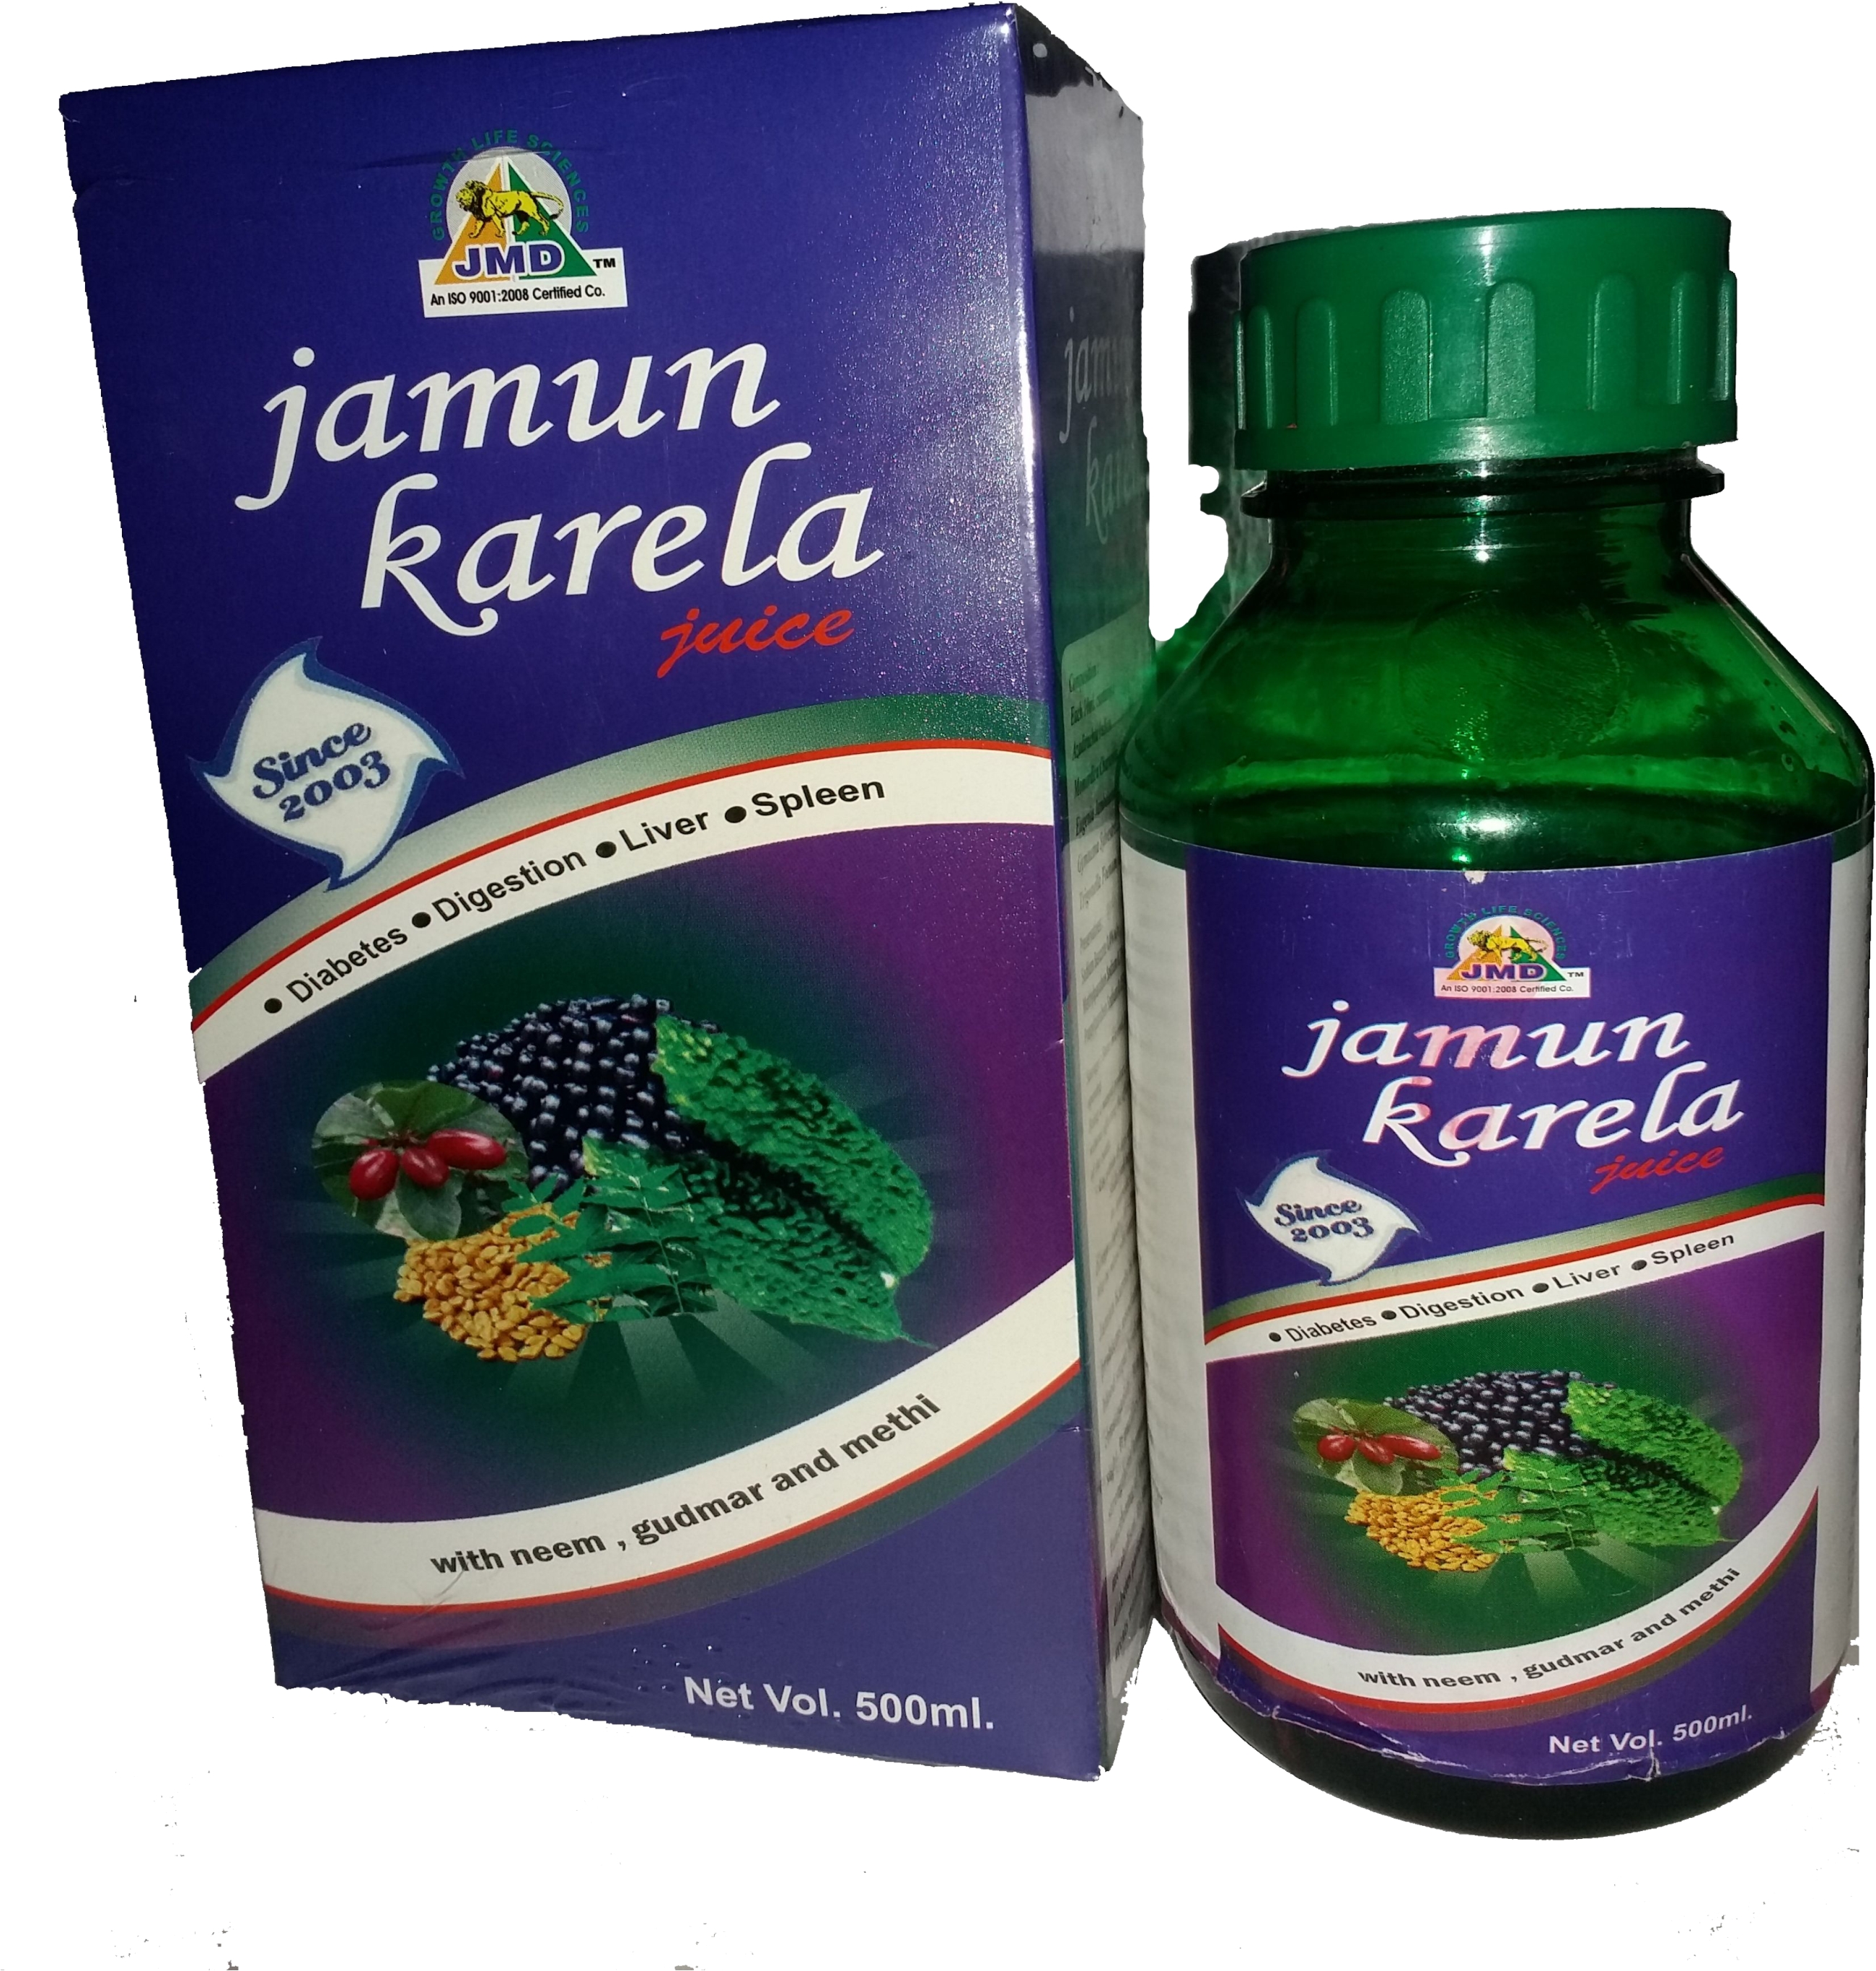 Wanted-Distributors for Jamun Karela/Bitter Gourd Juice in Pan India